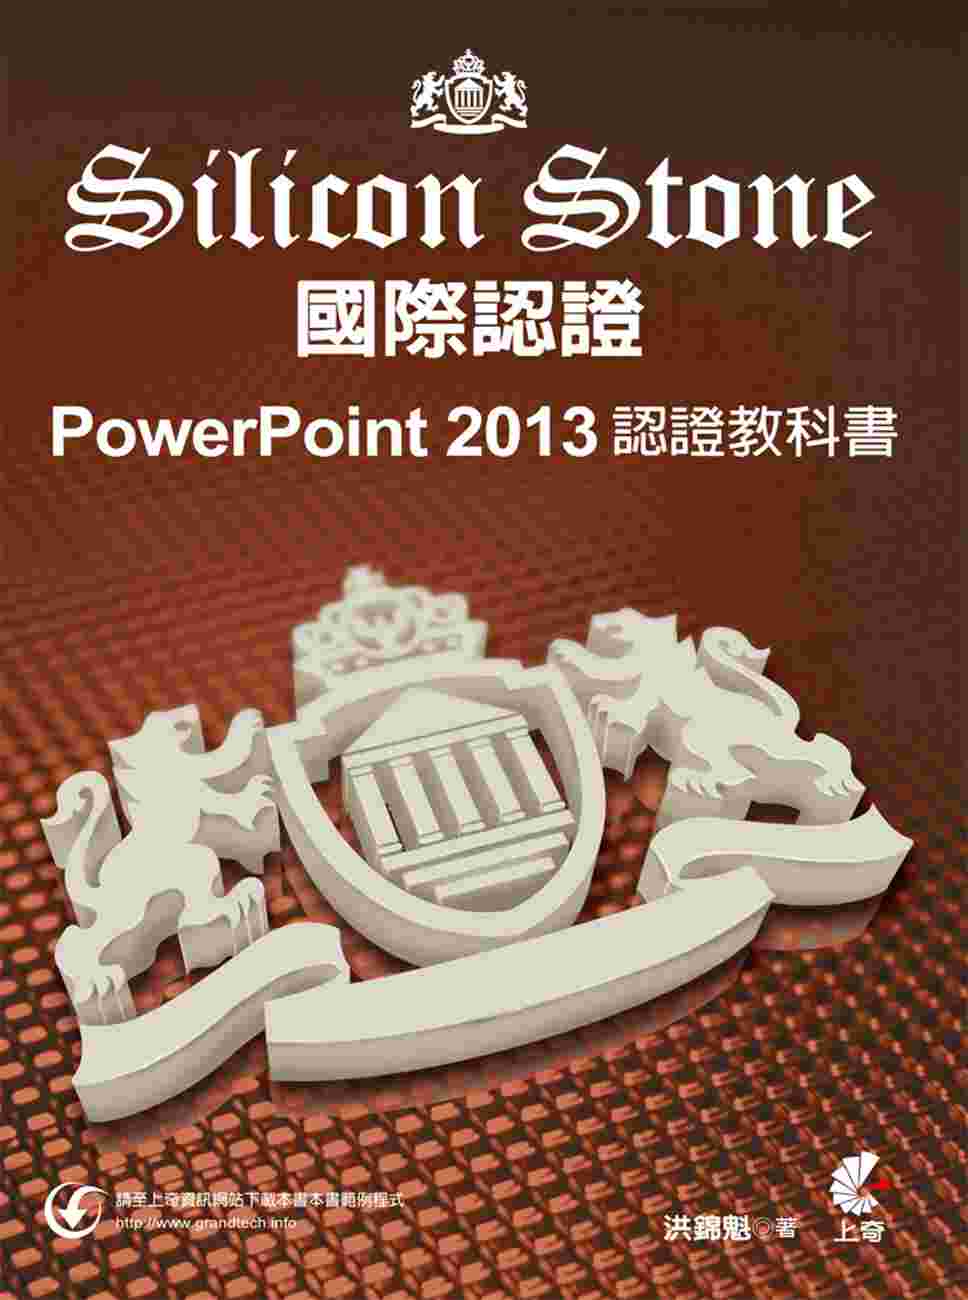 PowerPoint 2013 Silicon Stone ...